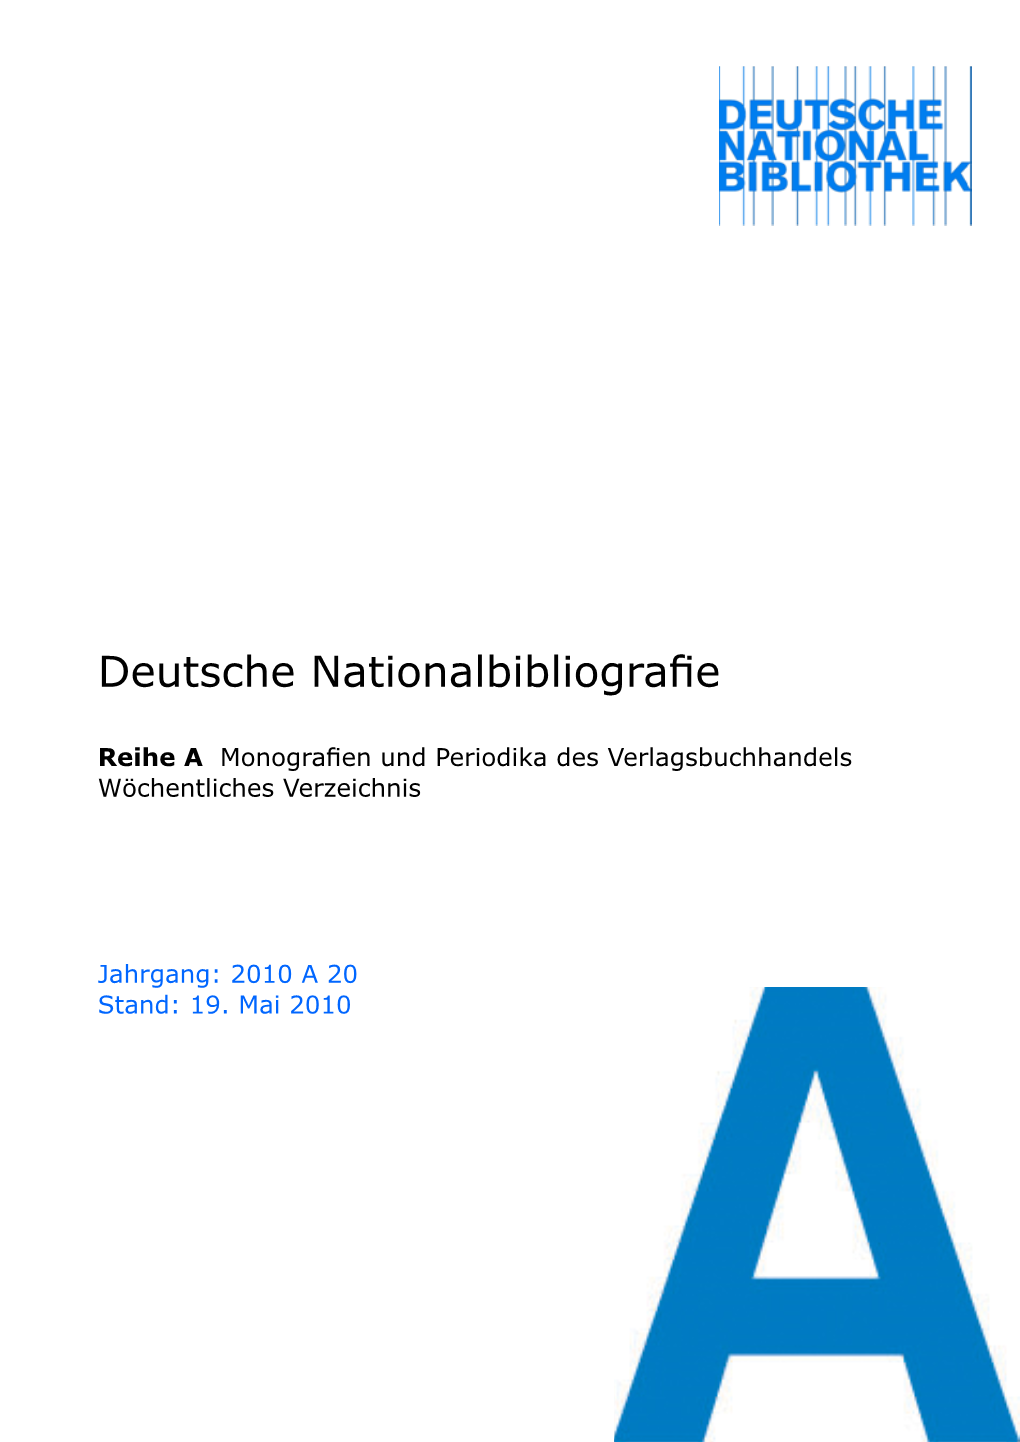 Deutsche Nationalbibliografie 2010 a 20